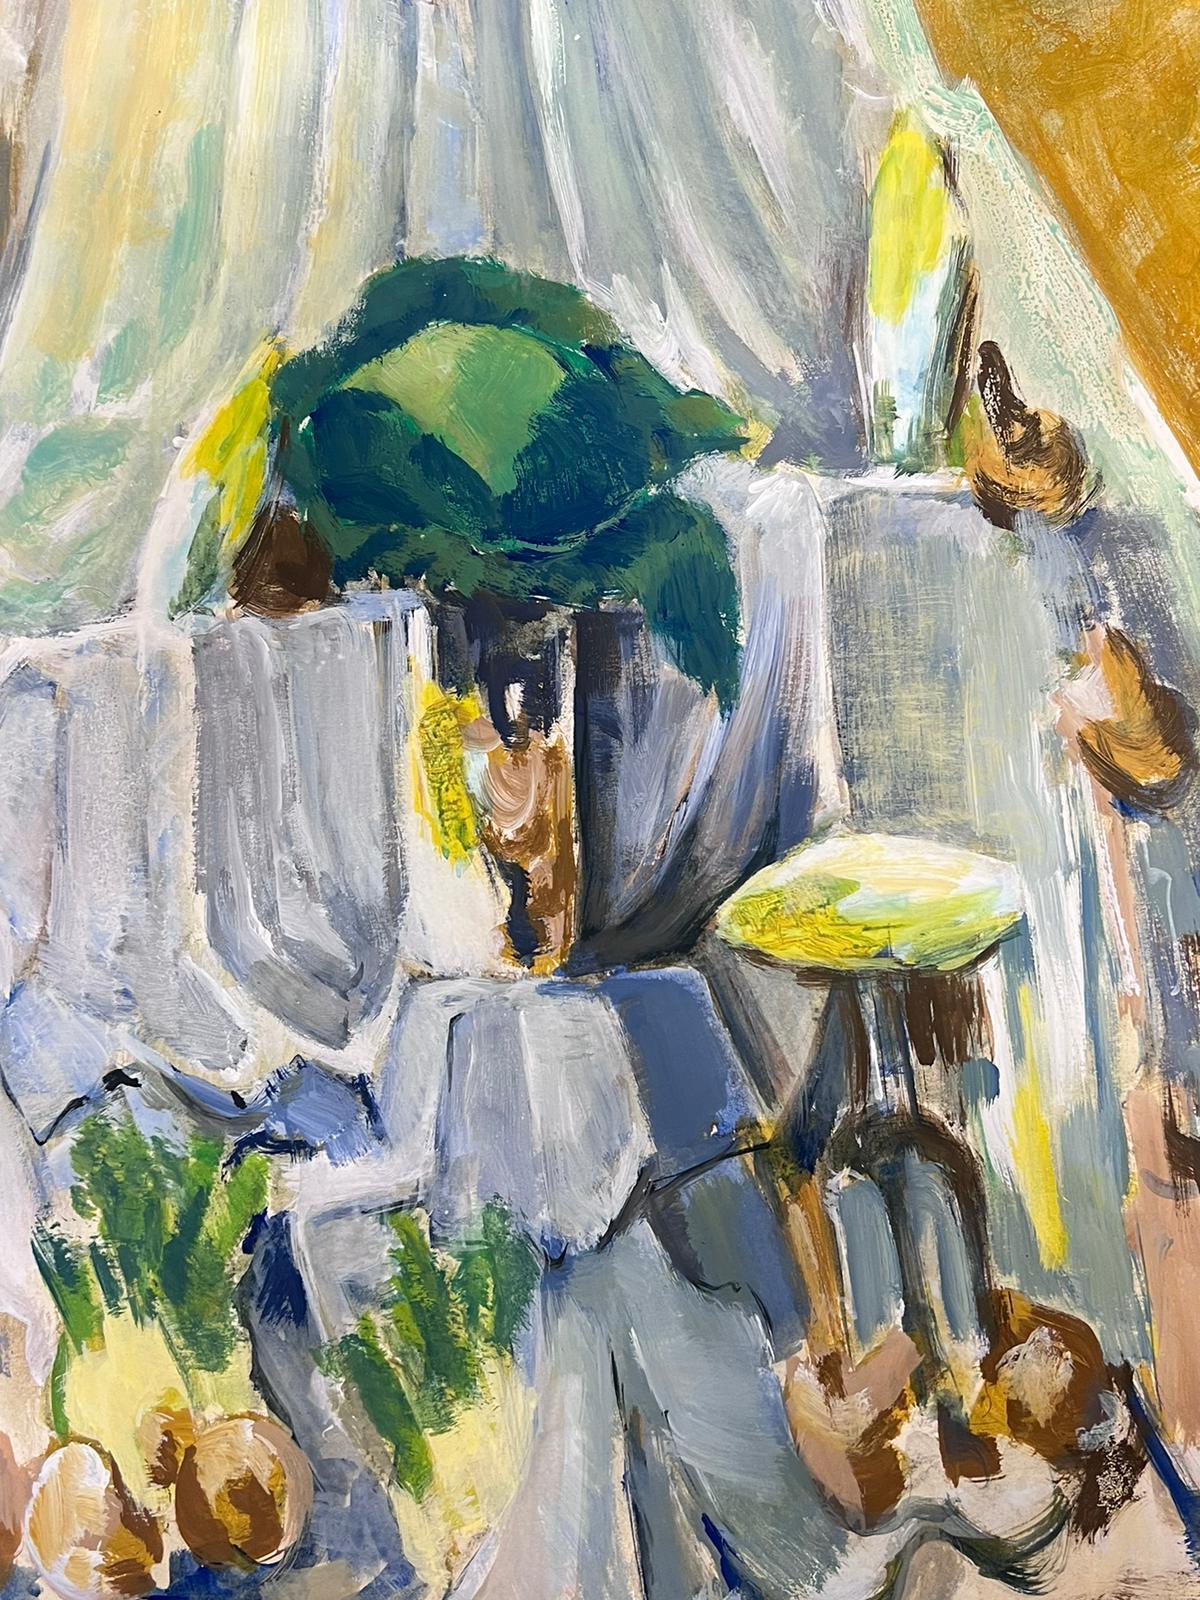 Stilleben
von Guy Nicod
(Französisch 1923 - 2021)
Öl auf Künstlerpapier, ungerahmt
Gemälde : 24 x 18 Zoll
verso gestempelt
Herkunft: Künstlernachlass, Frankreich
Zustand: sehr guter und gesunder Zustand